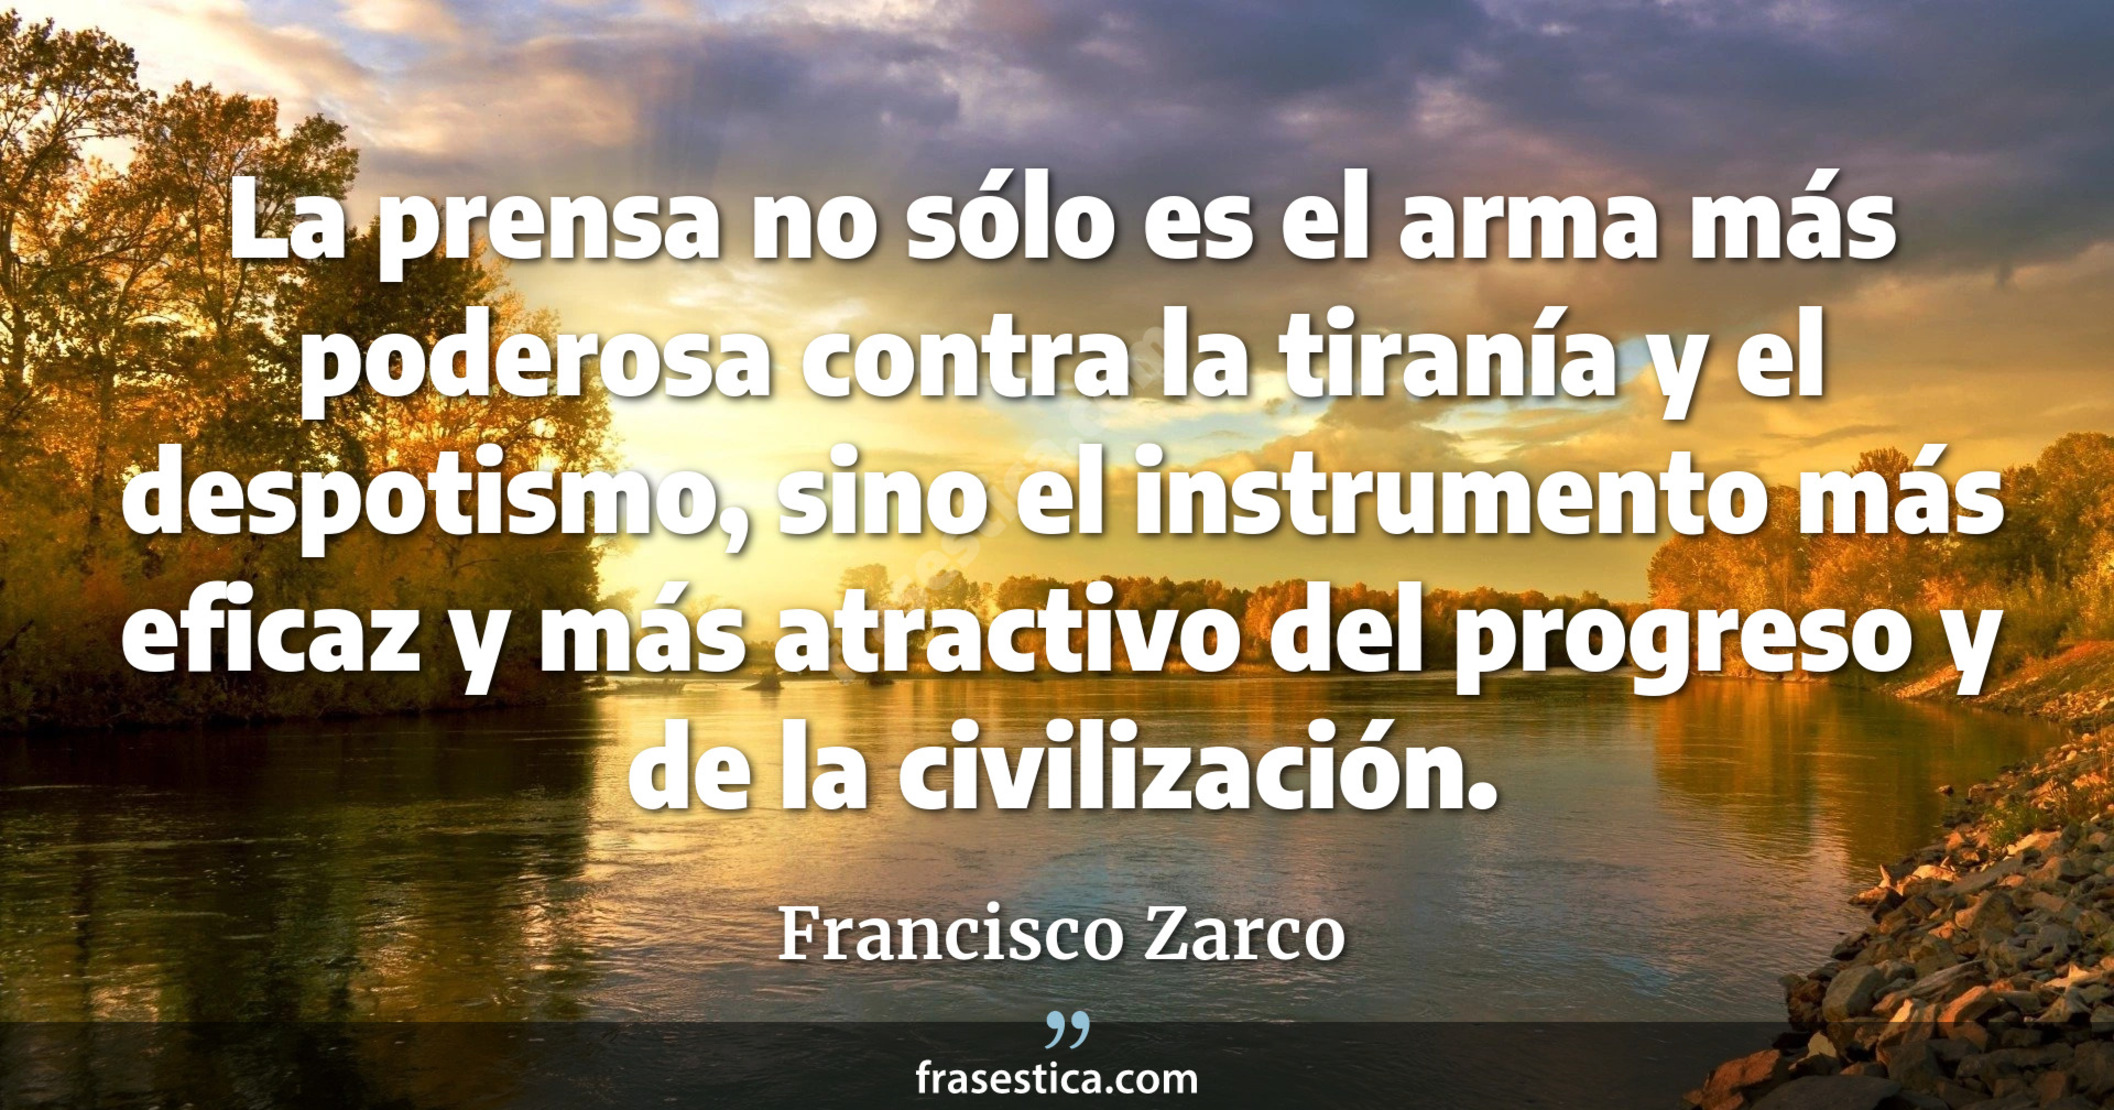 La prensa no sólo es el arma más poderosa contra la tiranía y el despotismo, sino el instrumento más eficaz y más atractivo del progreso y de la civilización. - Francisco Zarco